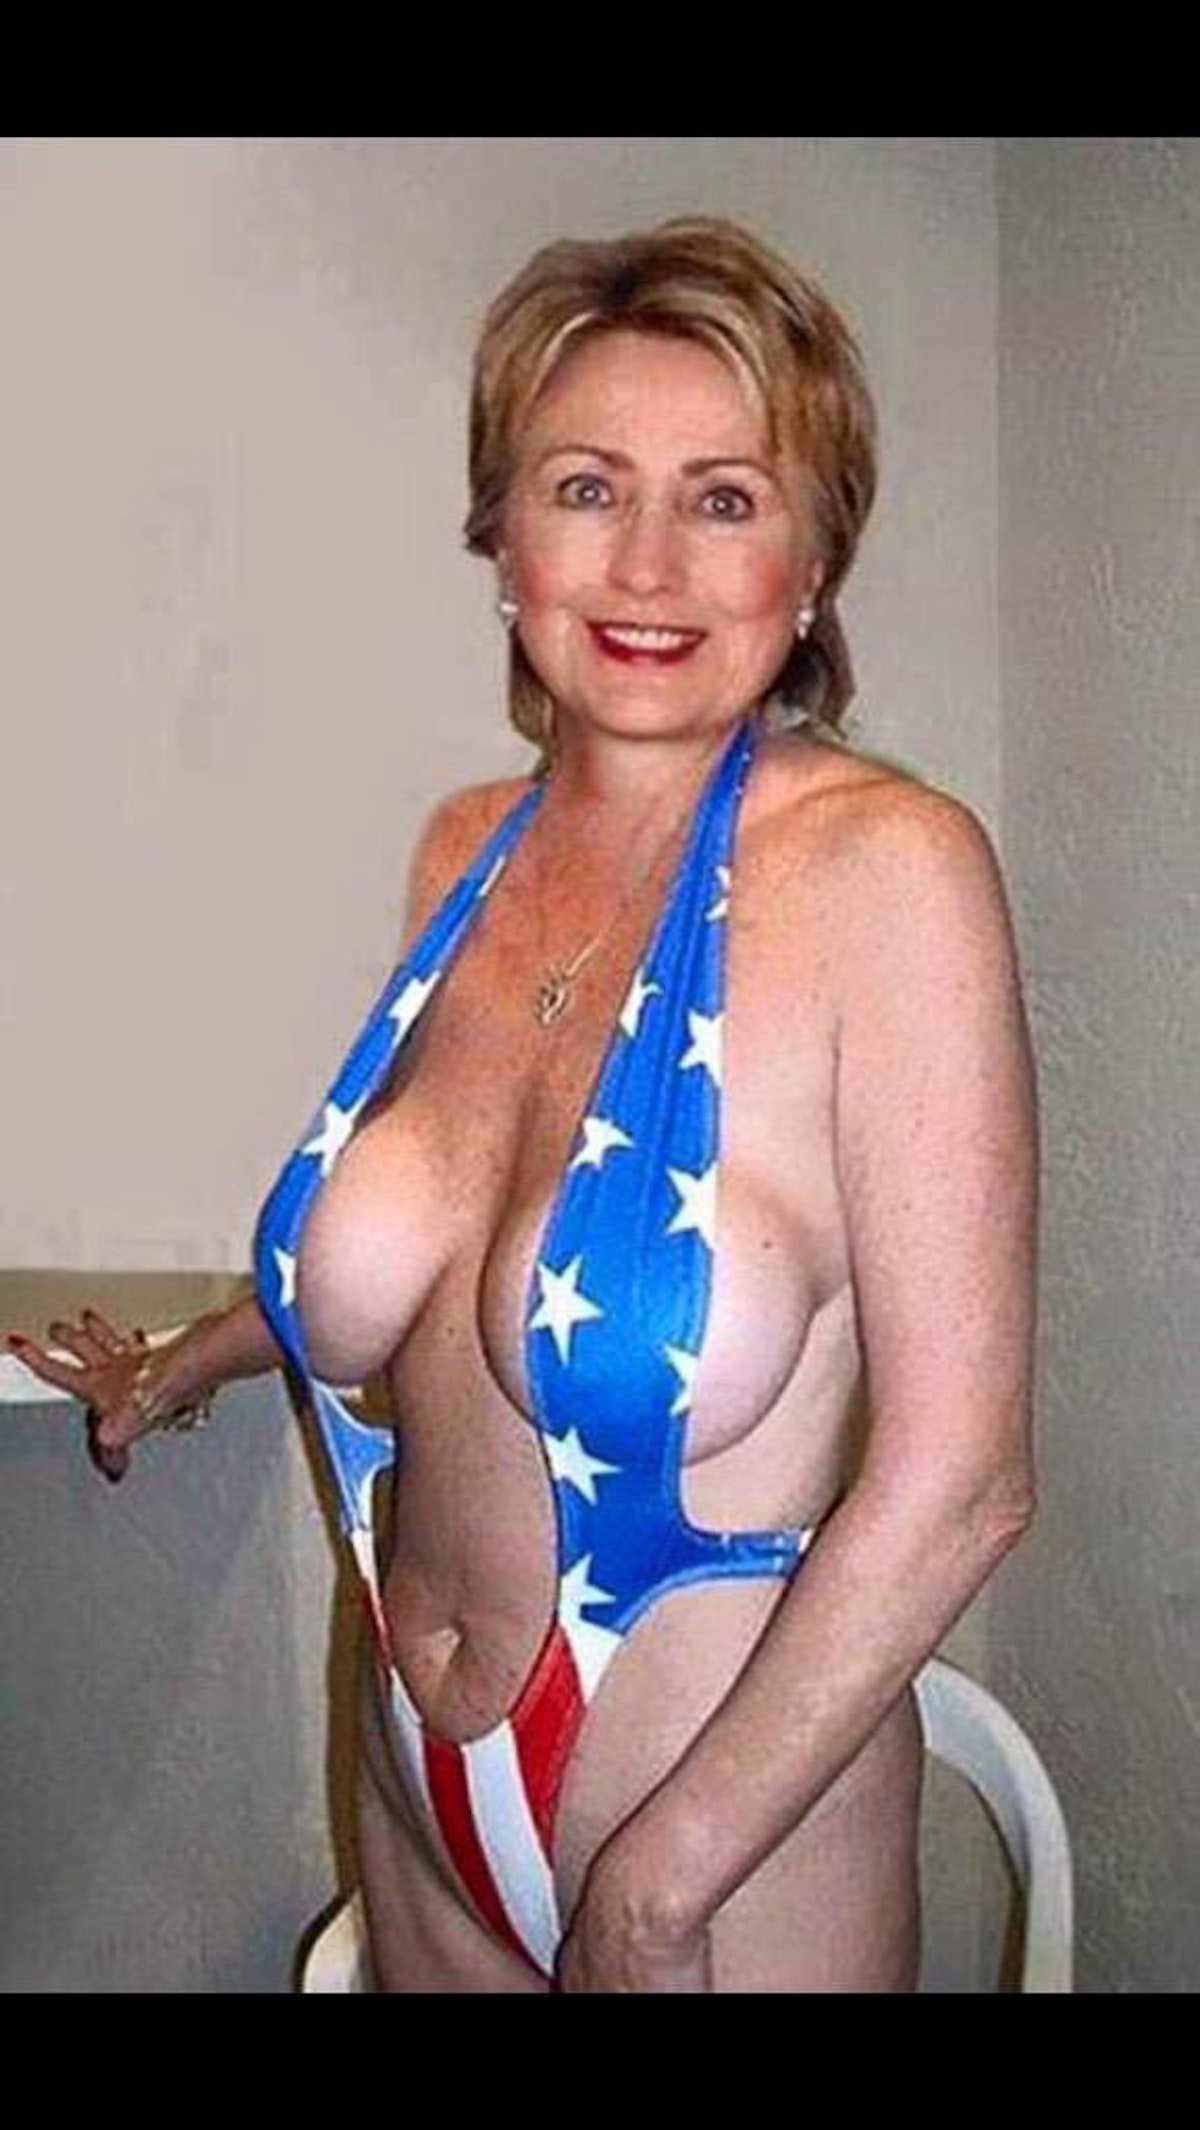 Hilary clinton boobs